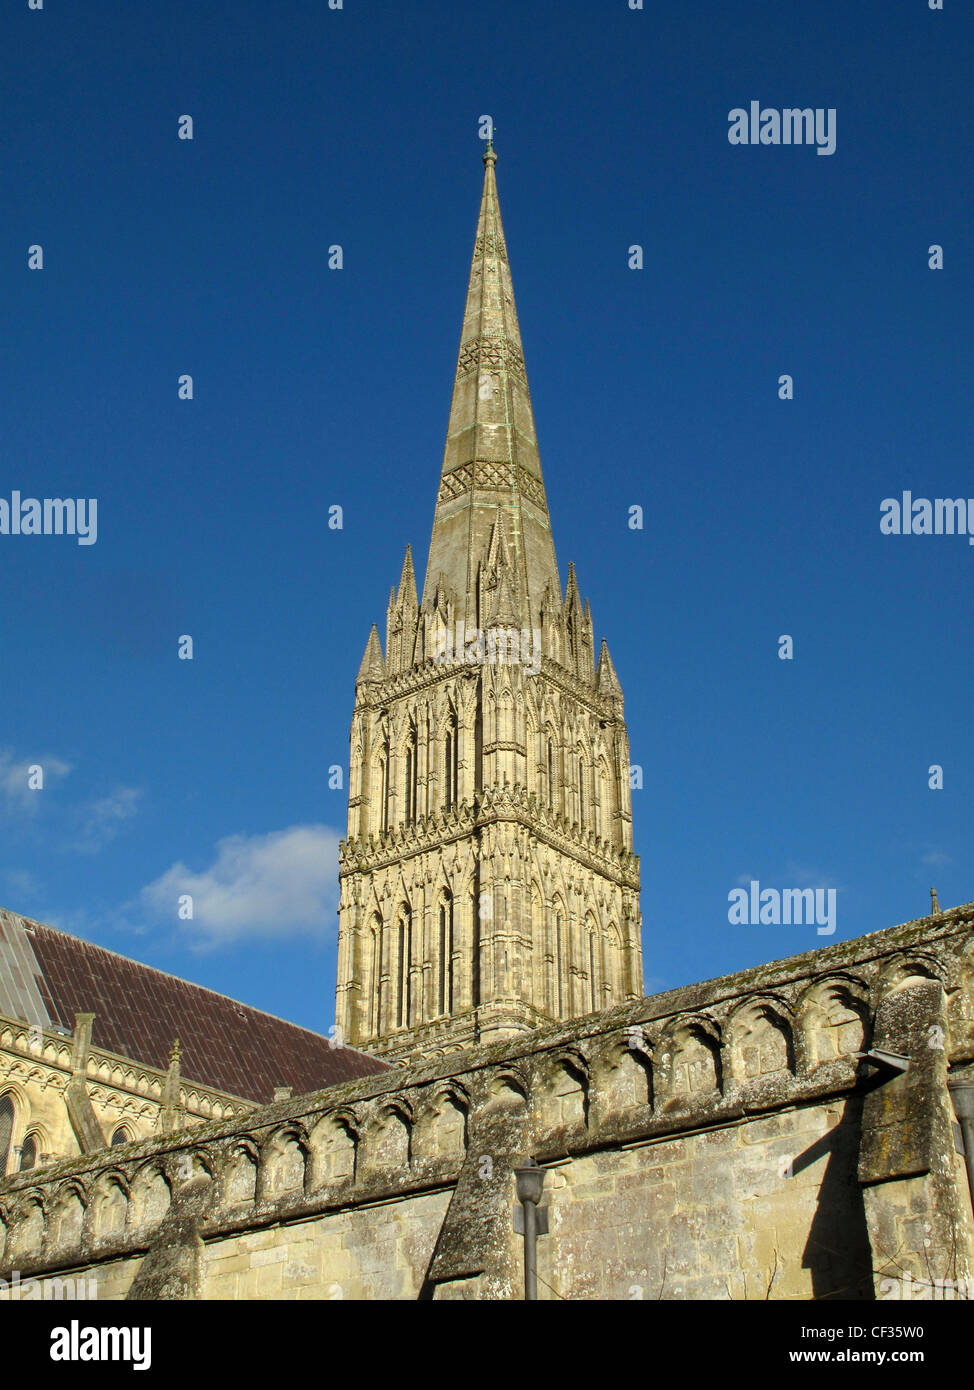 La guglia della Cattedrale di Salisbury, la piu' alta guglia della chiesa nel Regno Unito. Foto Stock